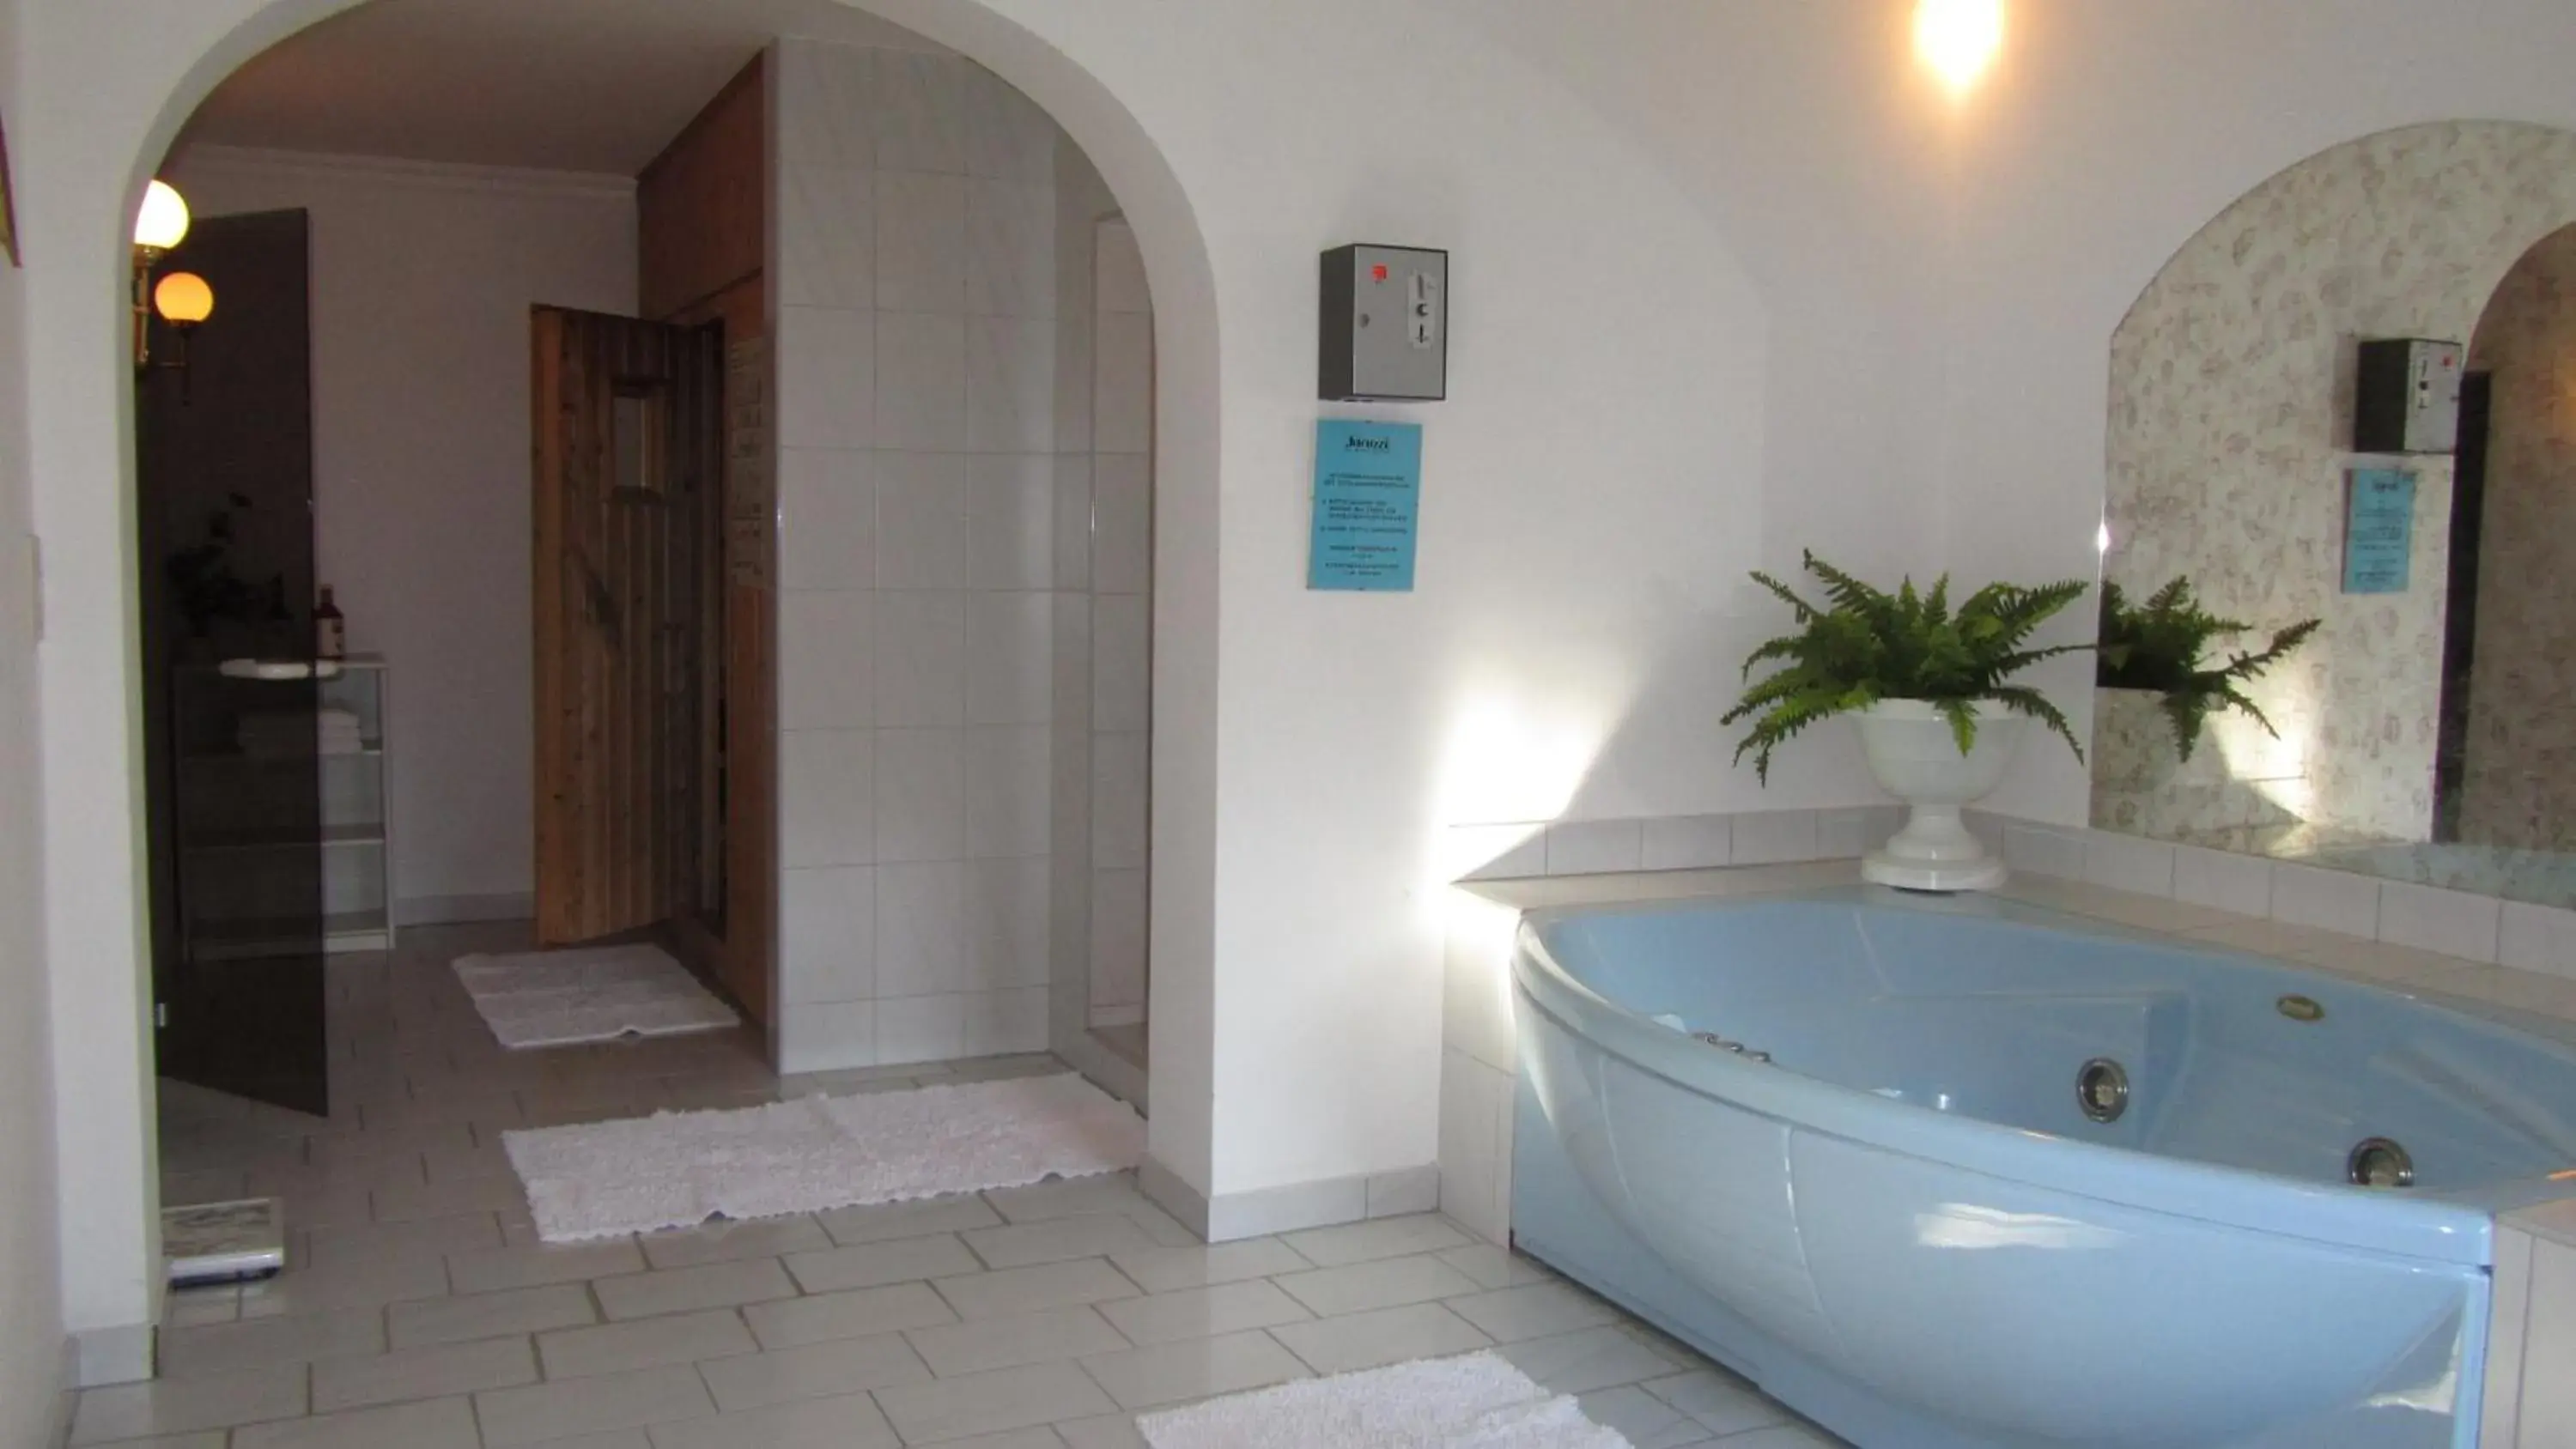 Spa and wellness centre/facilities in Hotel Schöne Aussicht